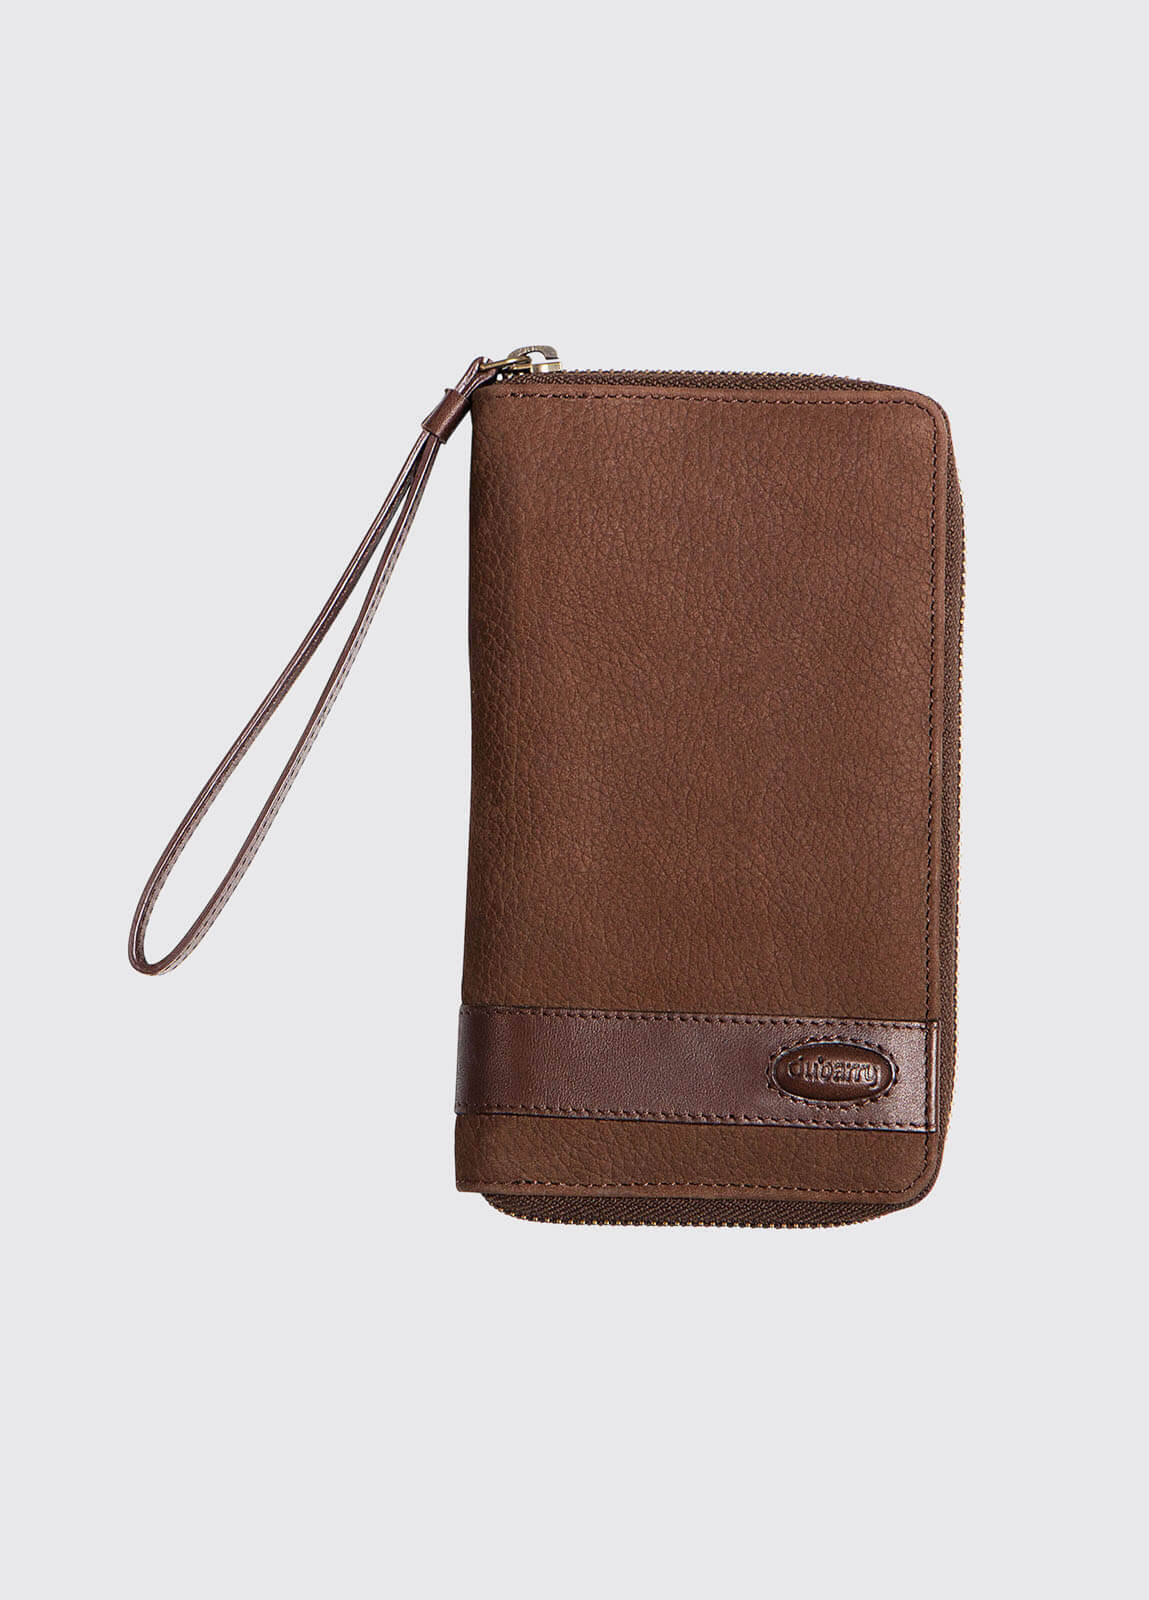 Letterkenny Leather Wallet - Walnut